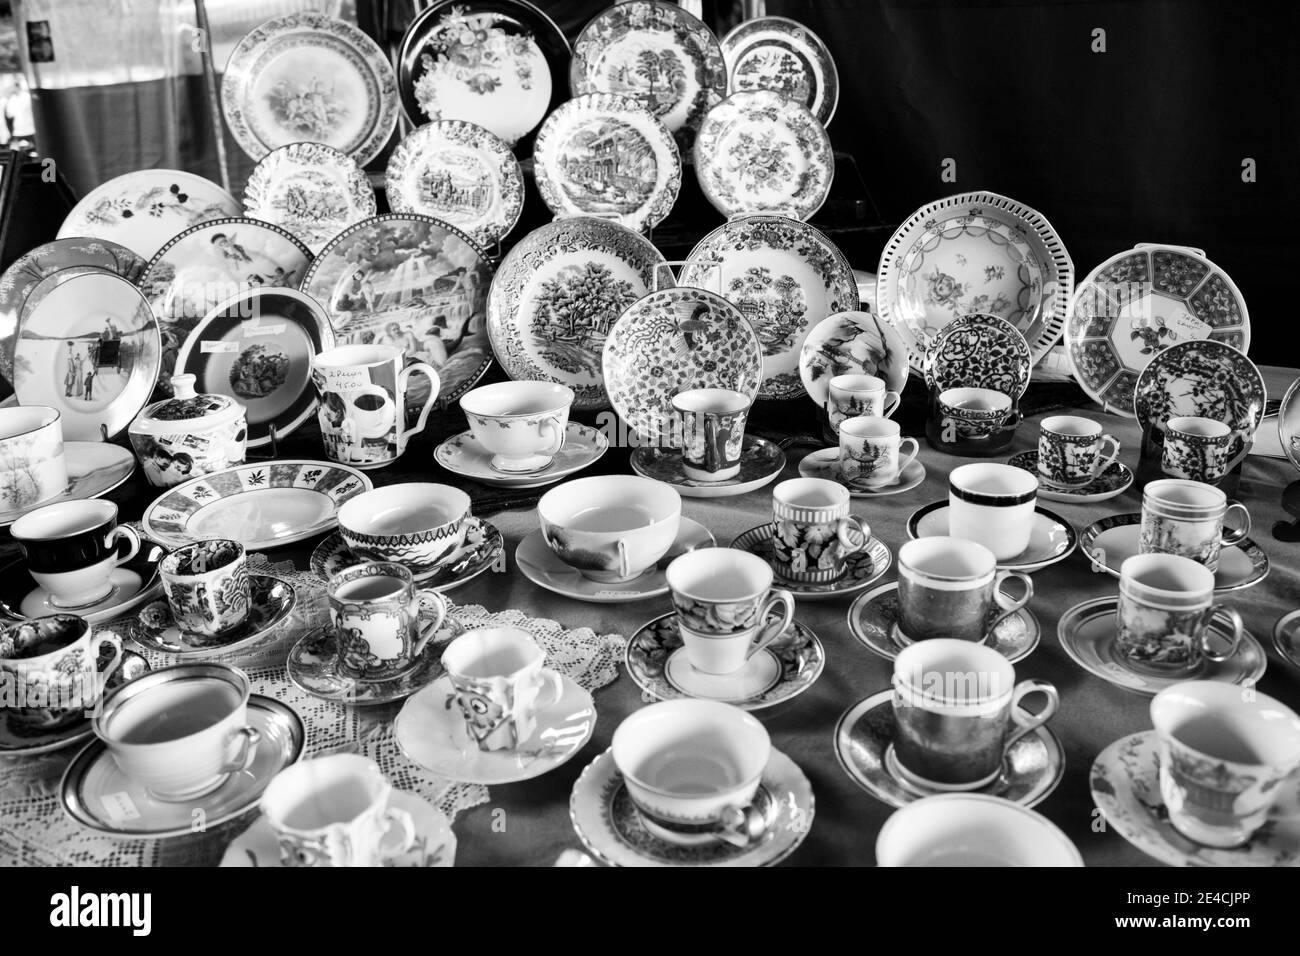 Sao Paulo / Sao Paulo / Brésil - 08 19 2018: Grand groupe de tasses et d'assiettes élégantes avec texture vive exposées à une table. [Noir et blanc] Banque D'Images